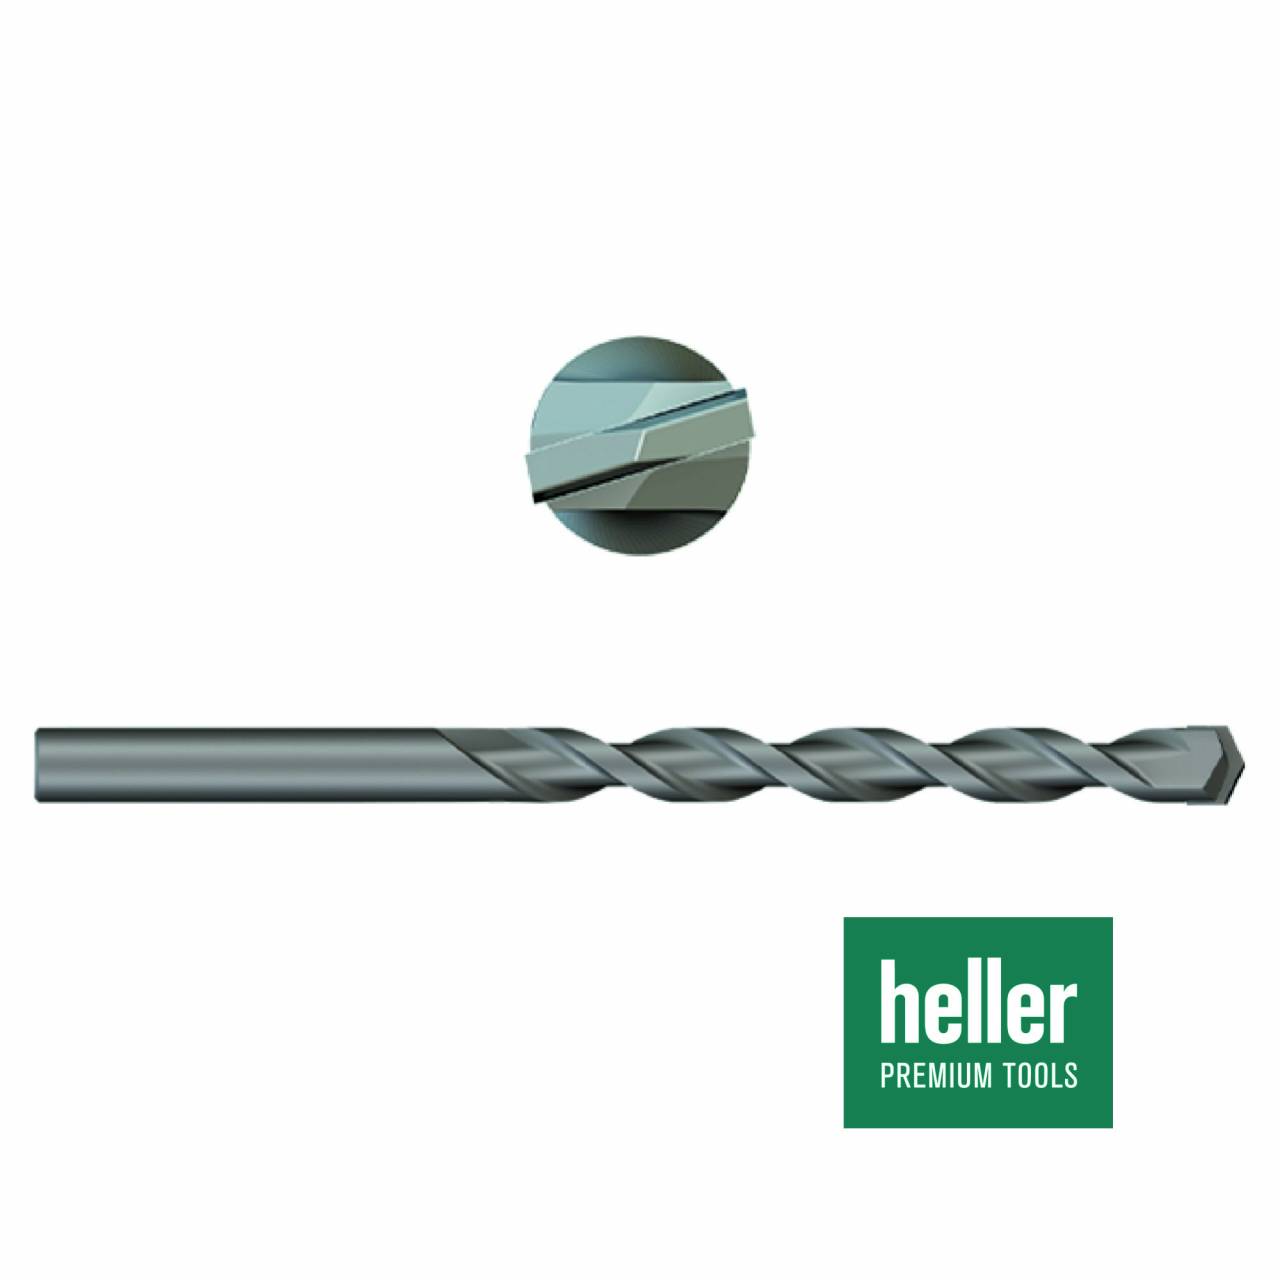 Betonbohrer 'Heller®' Ø 6 x 60 x 100 mm